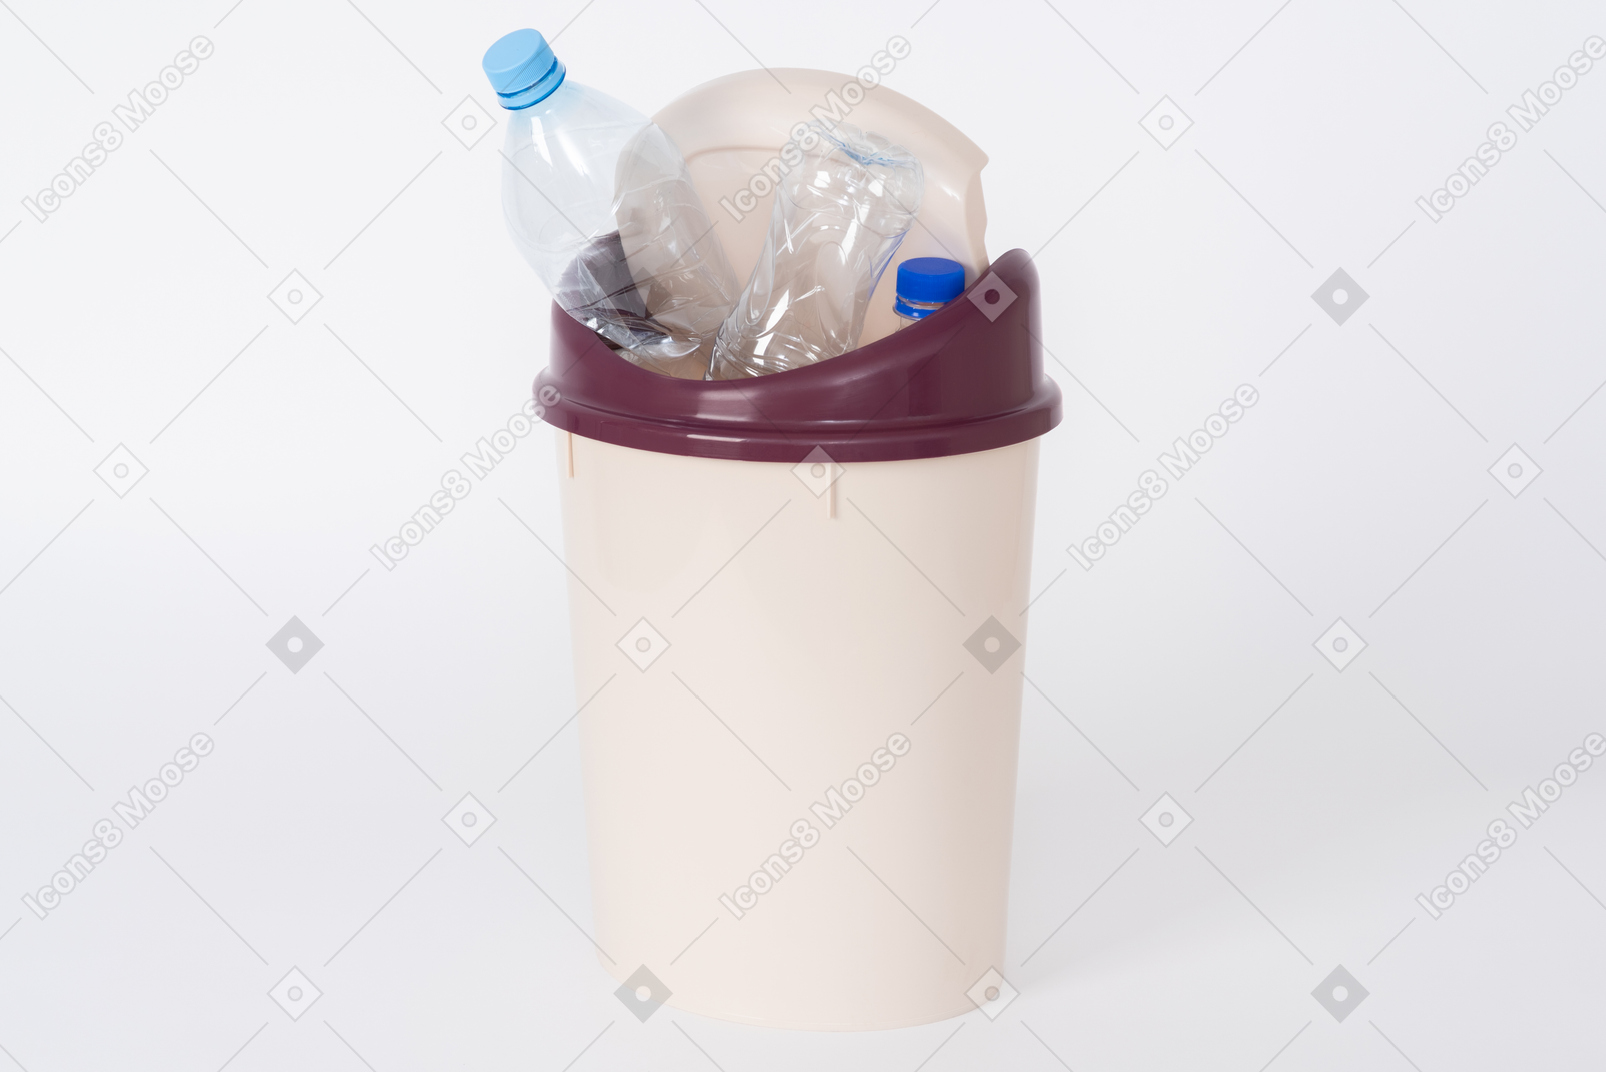 Lixeira de plástico marrom cheia de garrafas de plástico